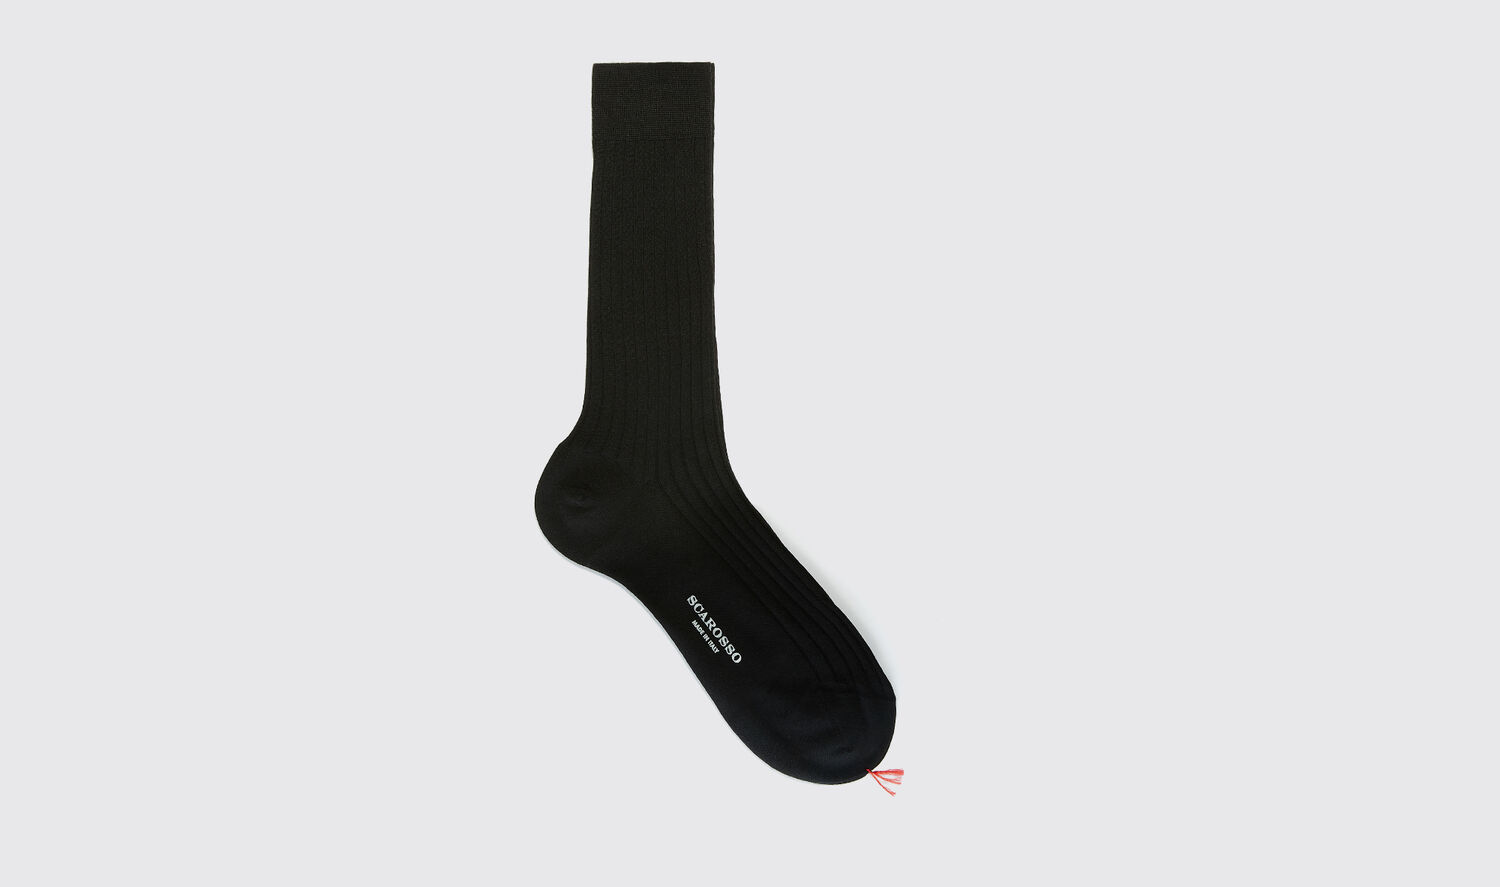 Scarosso Socks Black Wool Calf Socks Merino Wool In Black - Wool